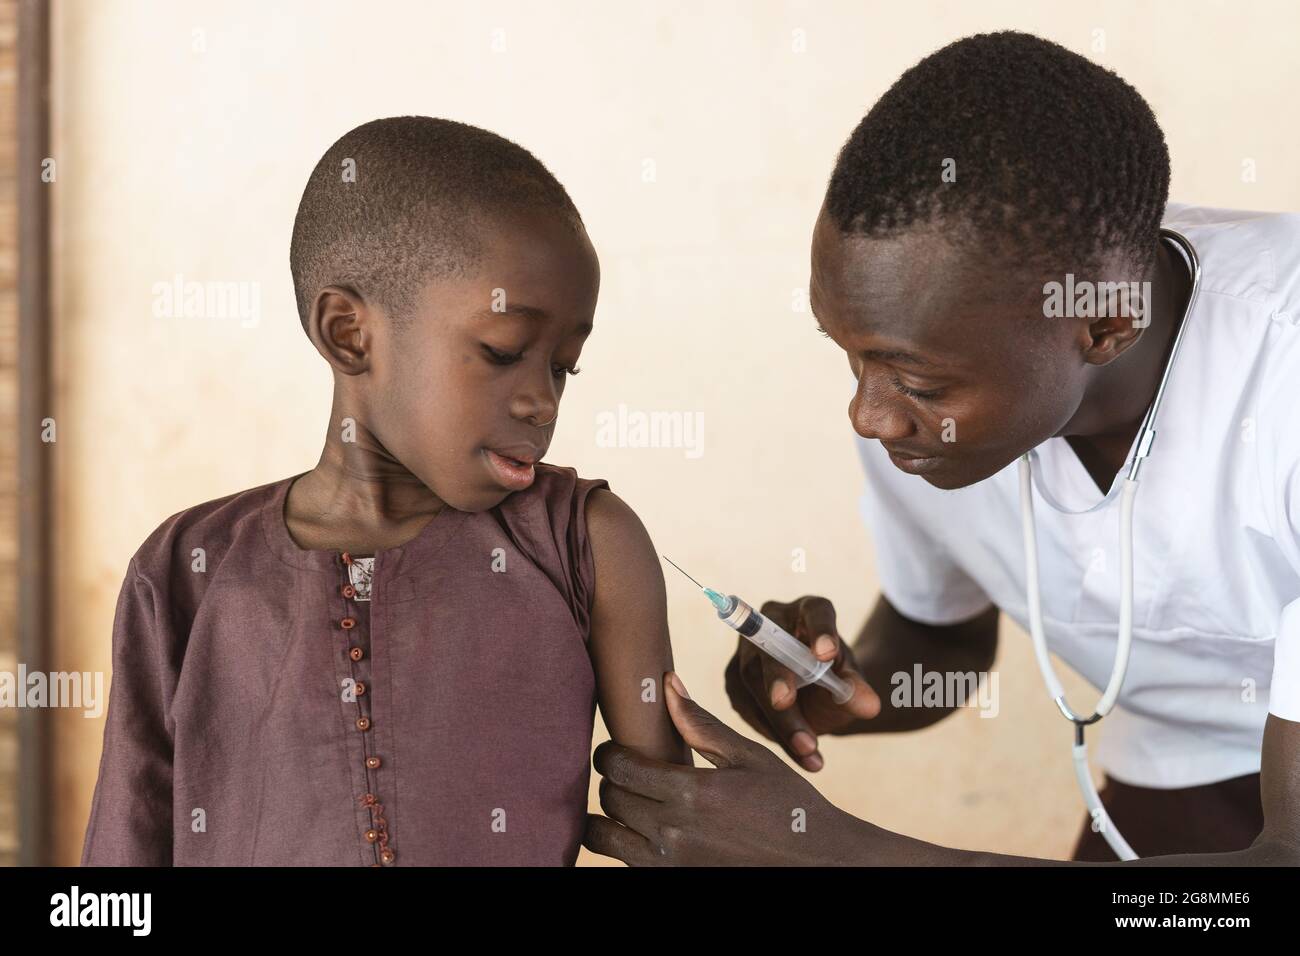 Questa è un'immagine di un carino ragazzo nero africano che ottiene il suo primo vaccino girato nella sua spalla da un medico africano maschio. Foto Stock